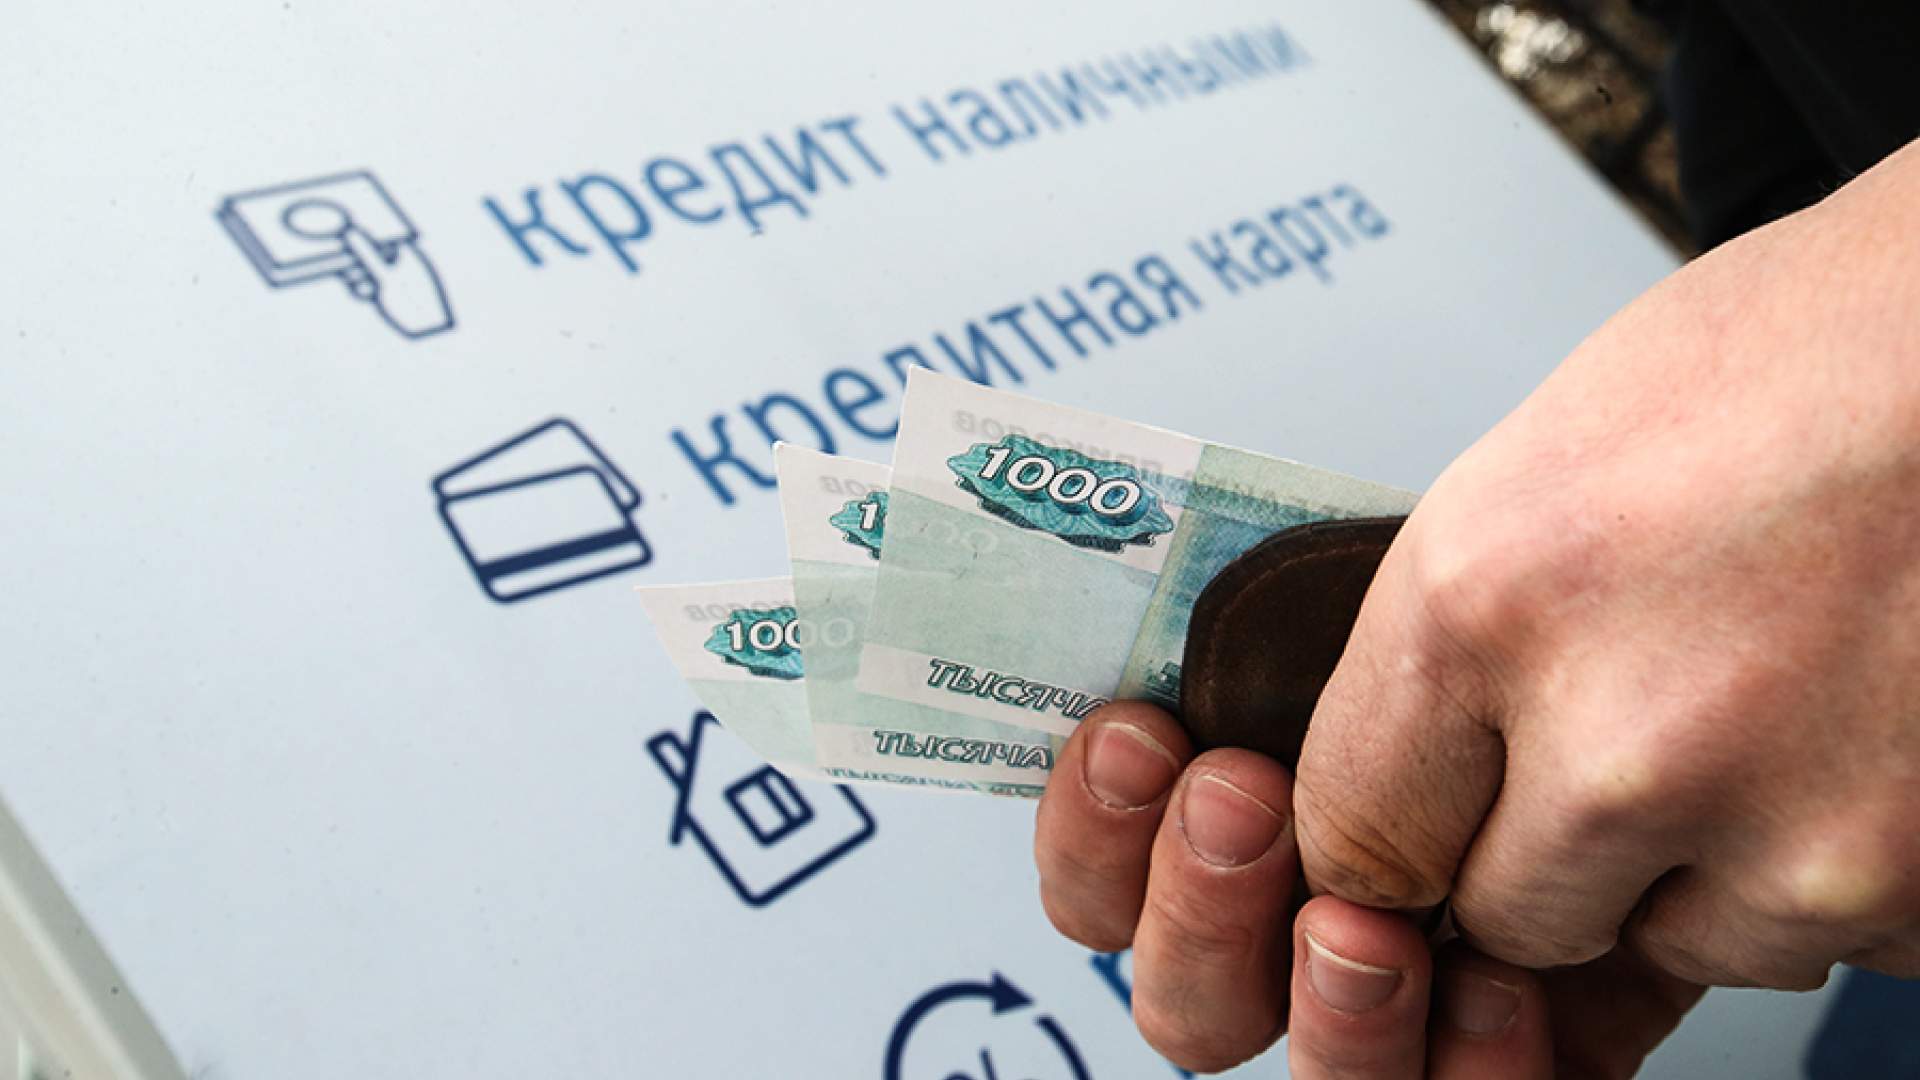 Всё в долг: 72% семей в России взяли как минимум один кредит за год |  Статьи | Известия